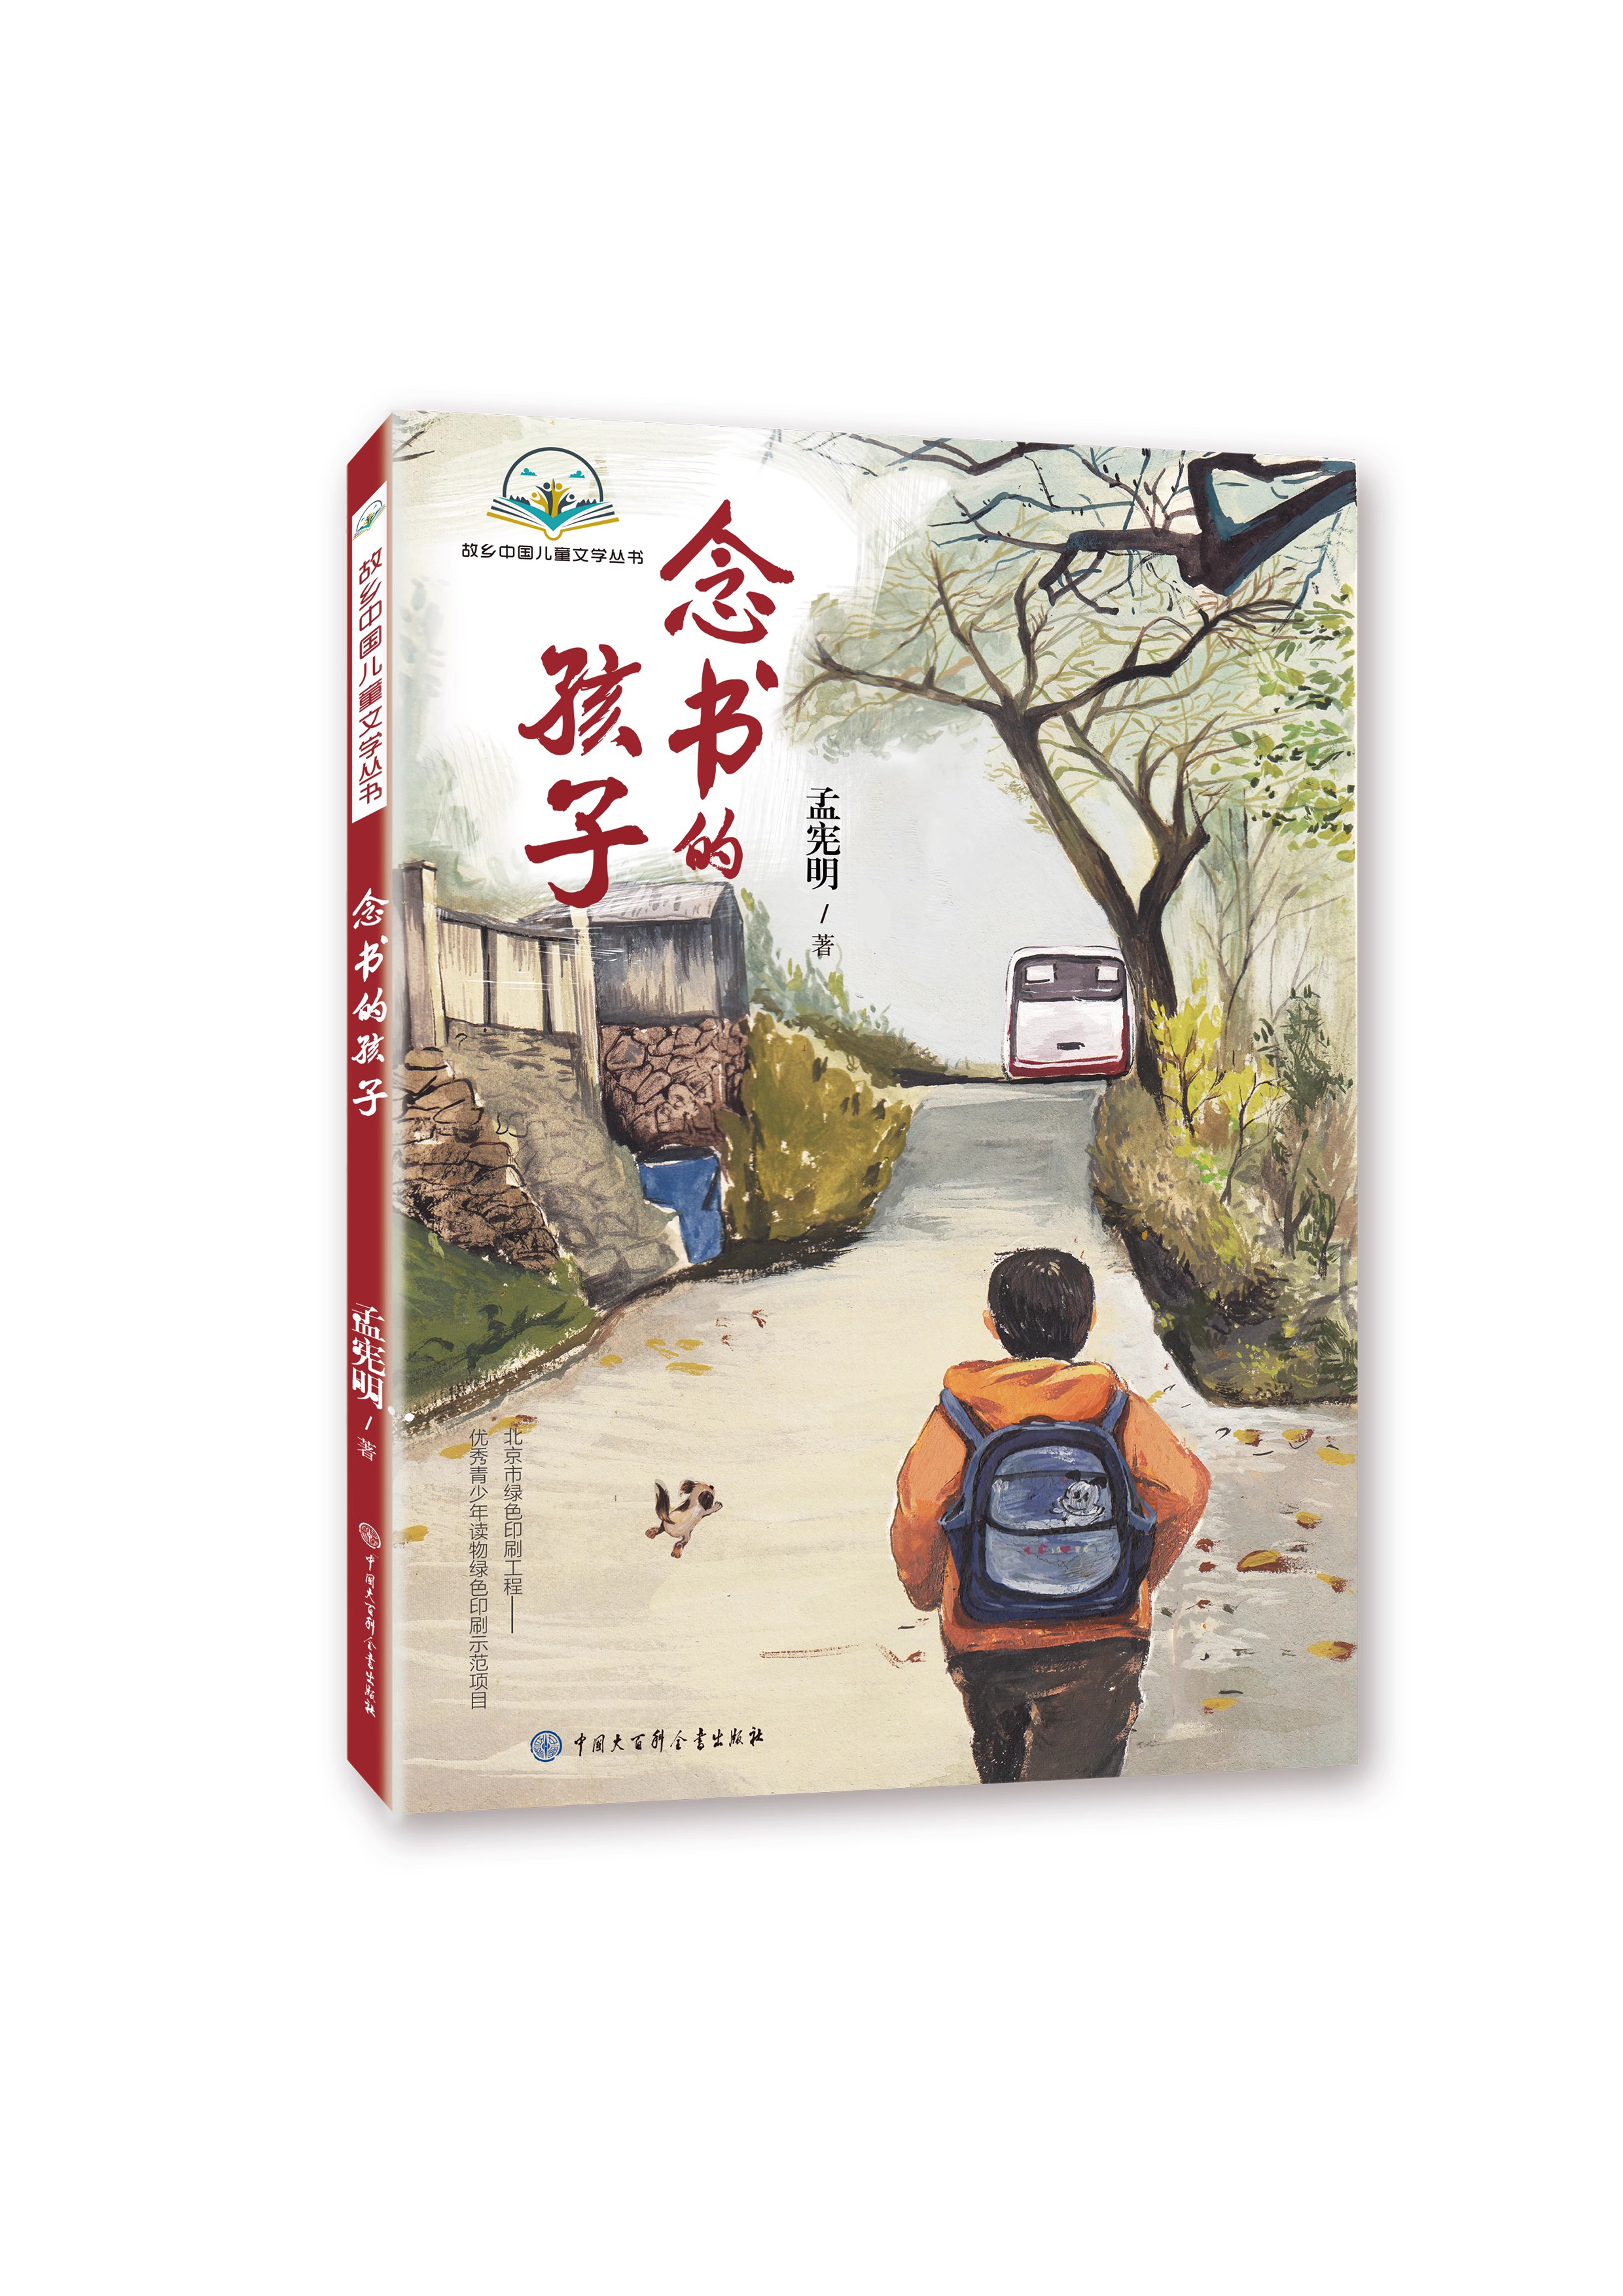 小学生四年级北京暑假阅读书目 念书的孩子 学生暑假课外阅读儿童文学家庭教育书籍正版读物经典书籍8-10-12-14岁儿童励志小说阅读